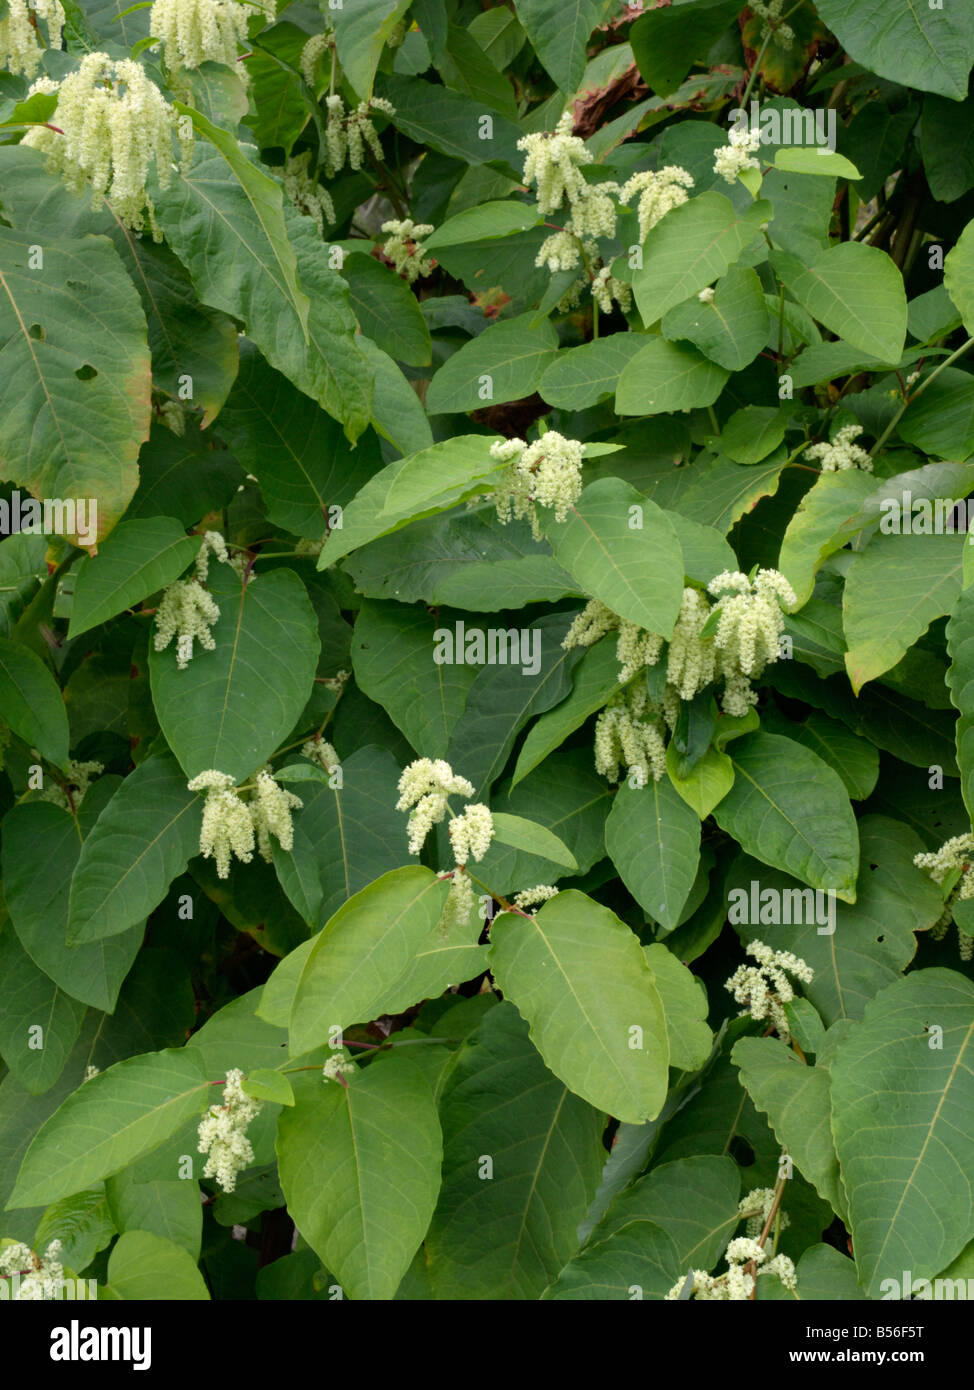 Giant knotweed (Fallopia sachalinensis syn. Reynoutria sachalinensis) Stock Photo